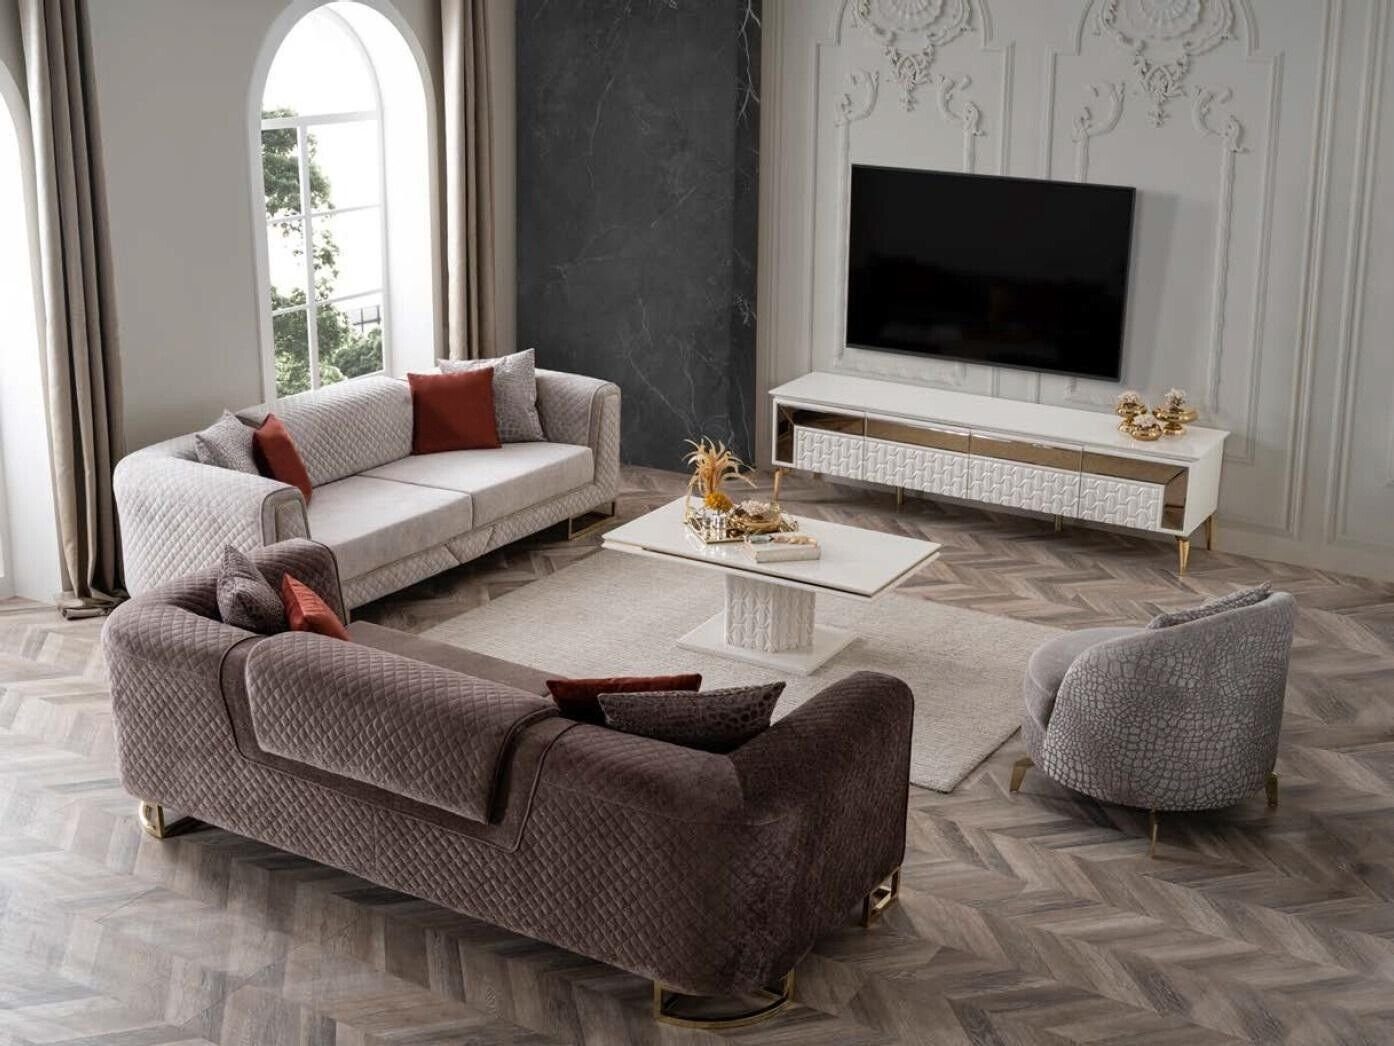 in xxl Einrichtung Polster 240cm, Möbel Sofa JVmoebel Ecksofa Luxus Europa Made Couch Dreisitzer